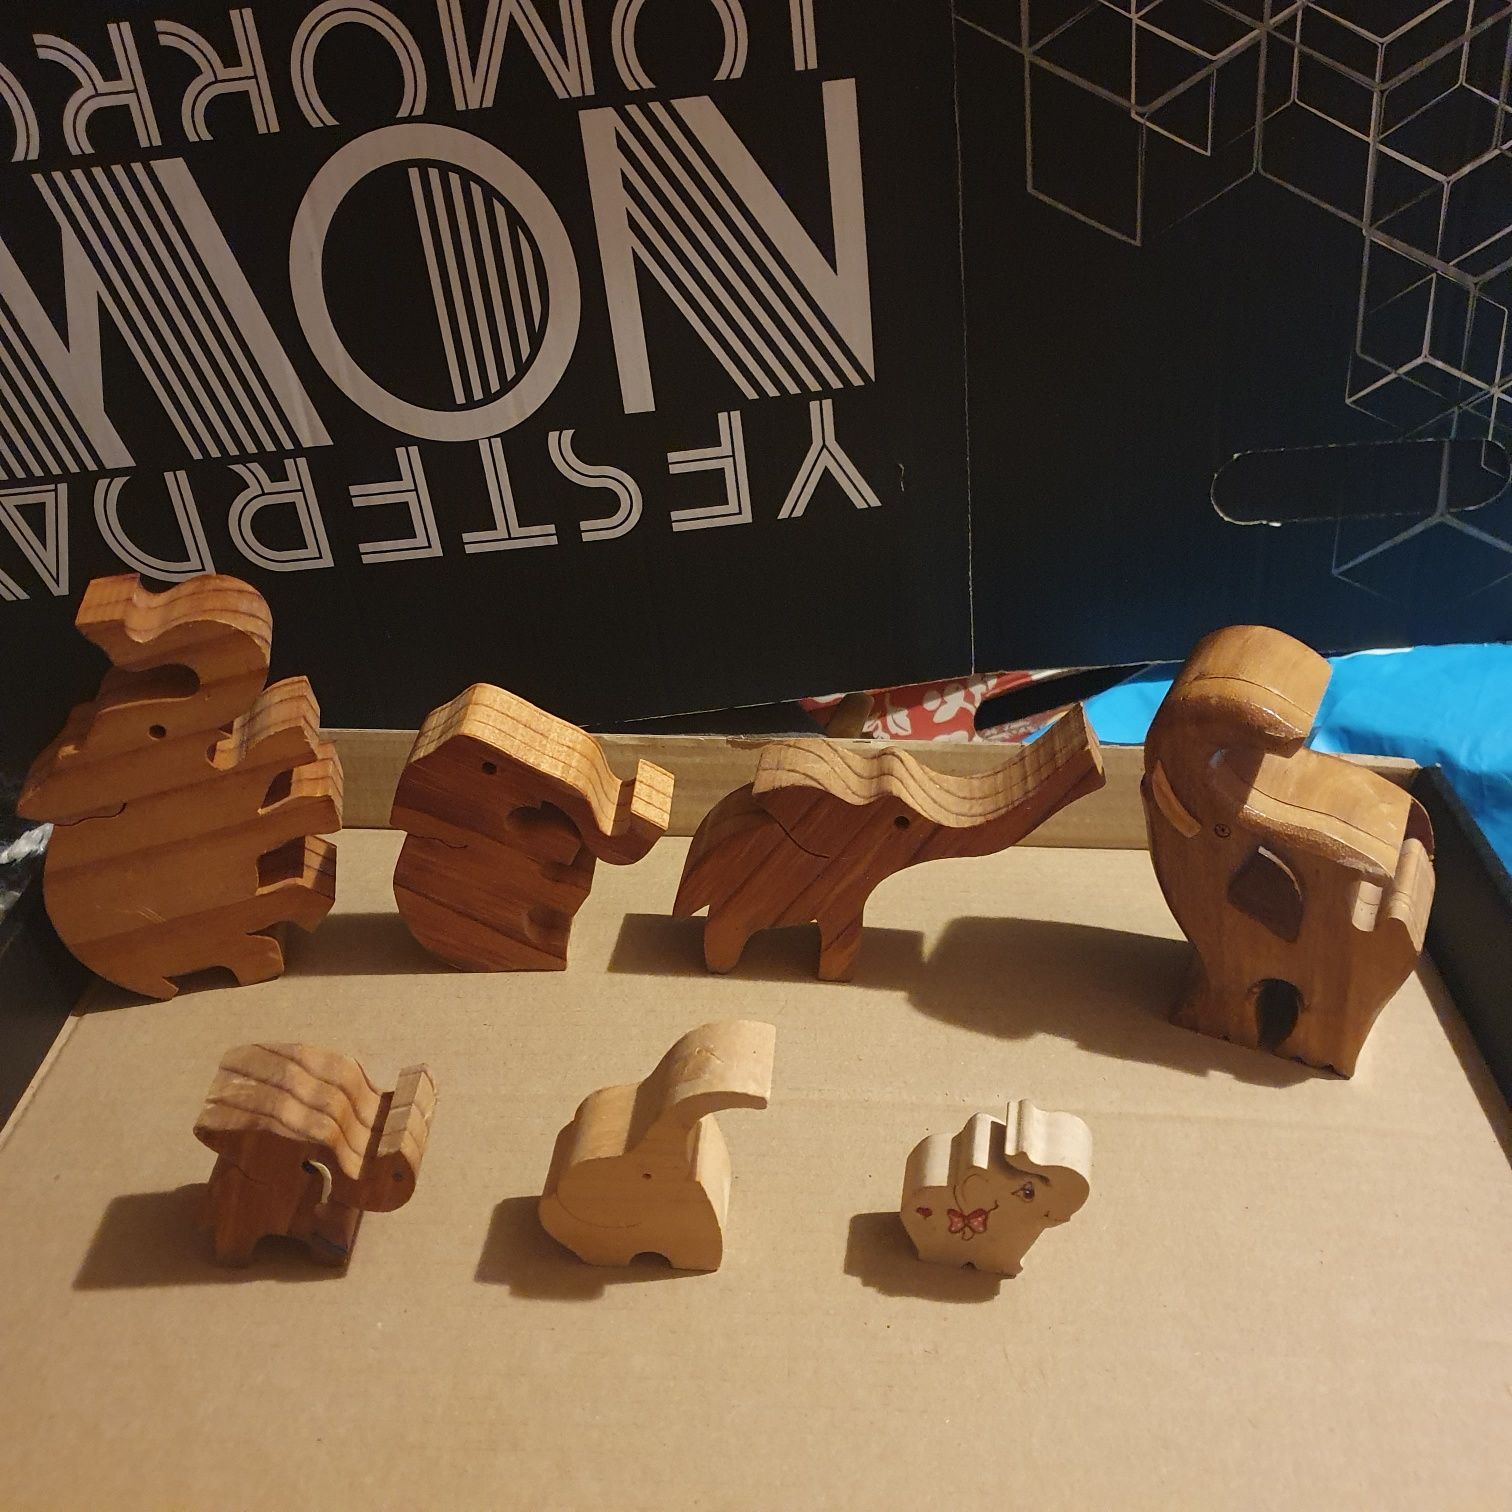 Zestaw figurek słoniki z drzewa cena z wysyłką pocztą polską